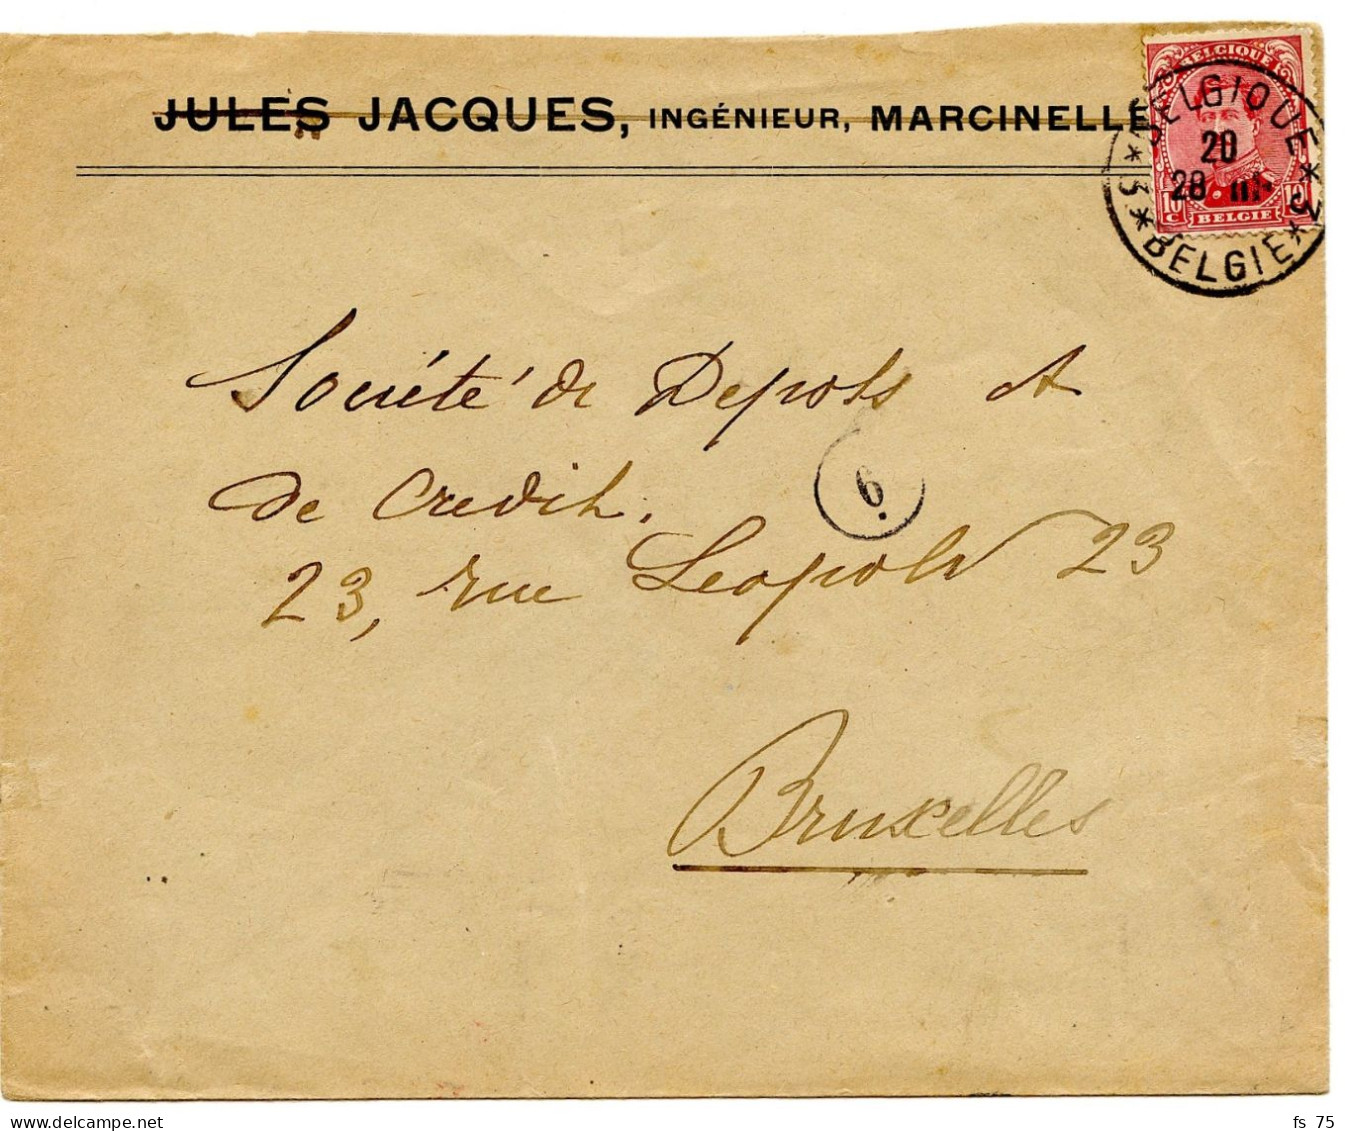 BELGIQUE - COB 138 SIMPLE CERCLE BILINGUE 3 * BELGIQUE * 3  SUR LETTRE DE MARCINELLE, 1919 - Storia Postale